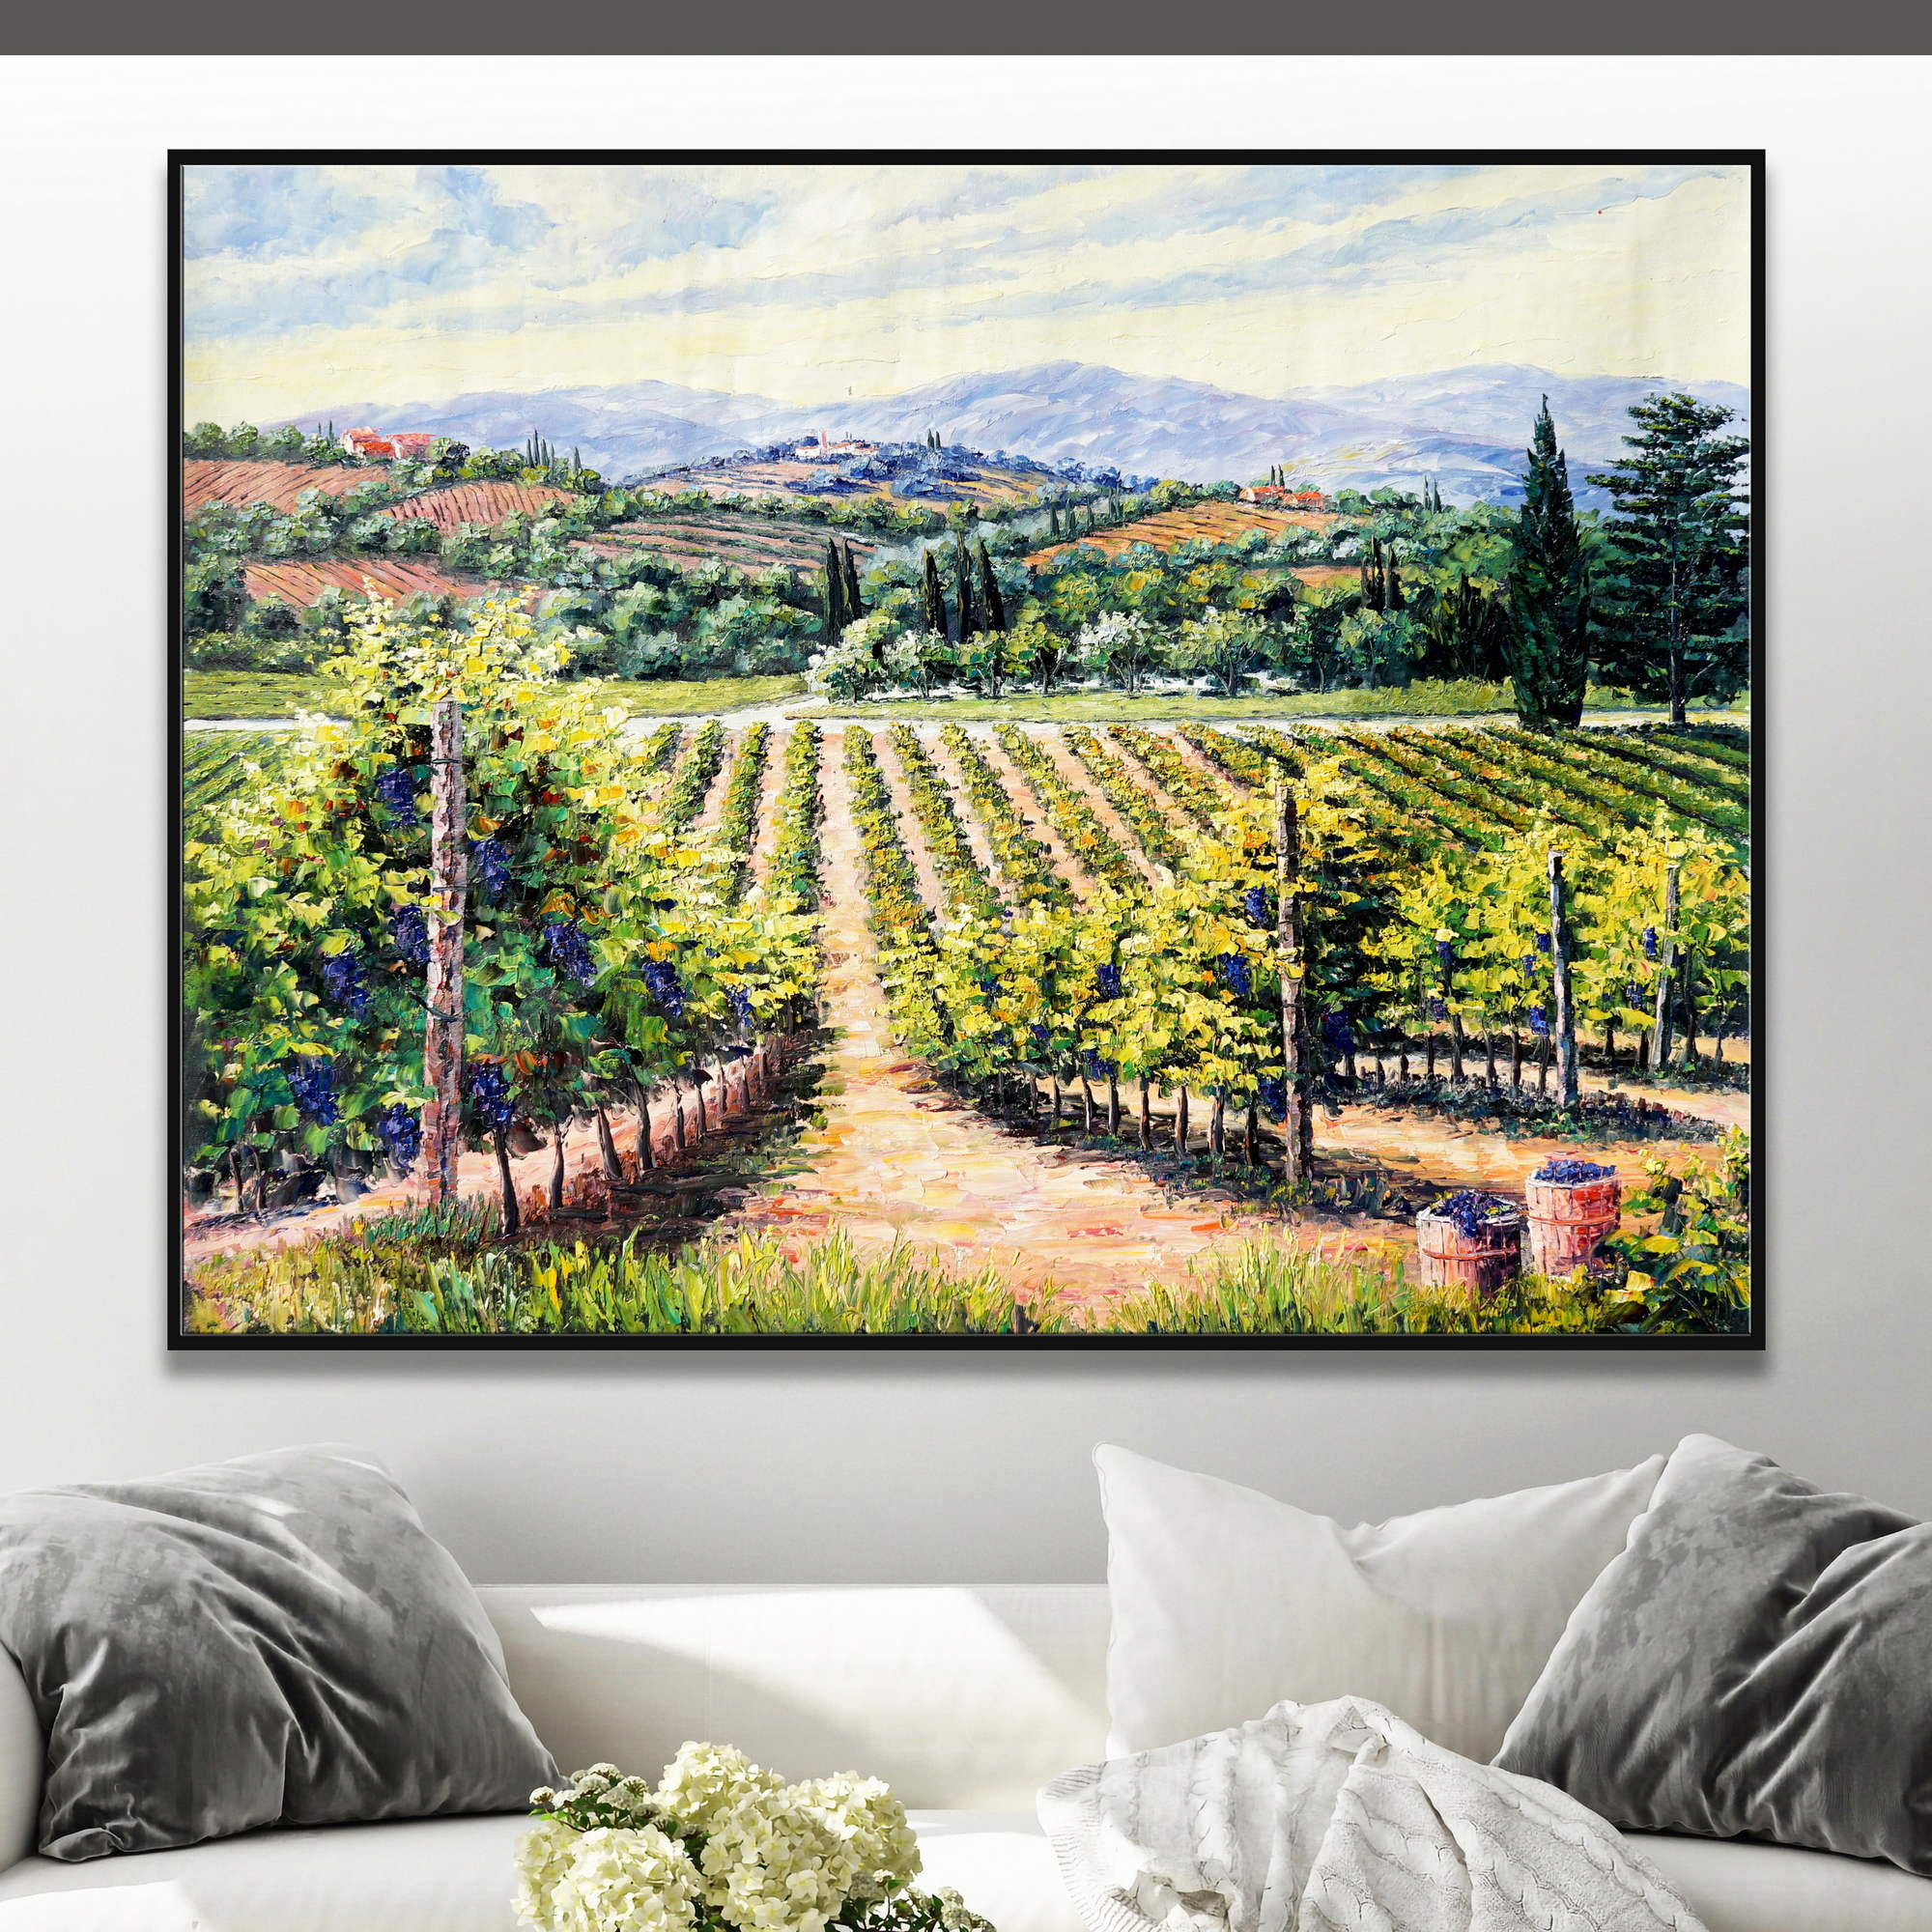 Dipinto di un paesaggio toscano con colline e viti pronte per la vendemmia